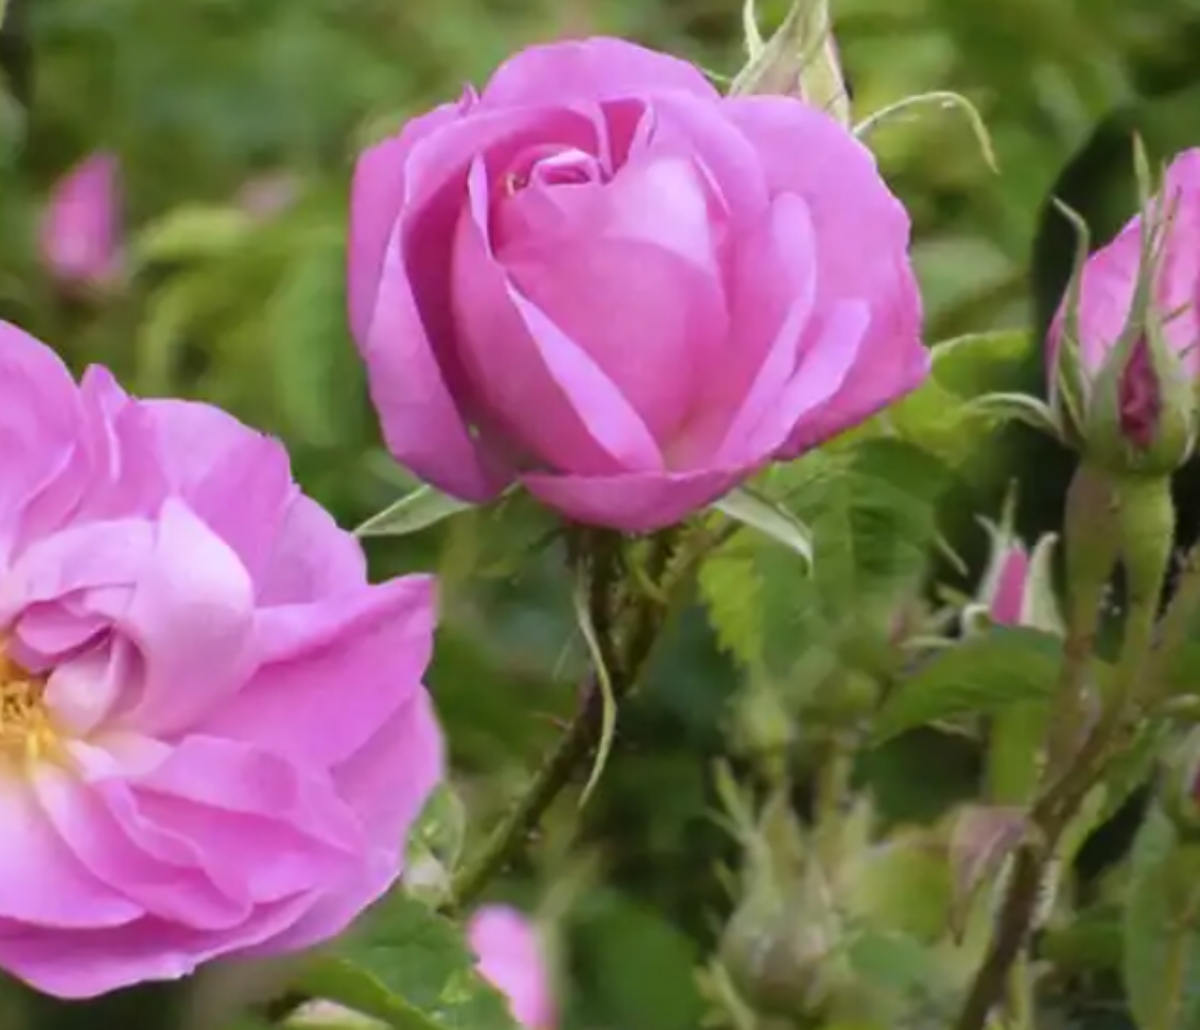 Damascene rose medicinal plants for women's